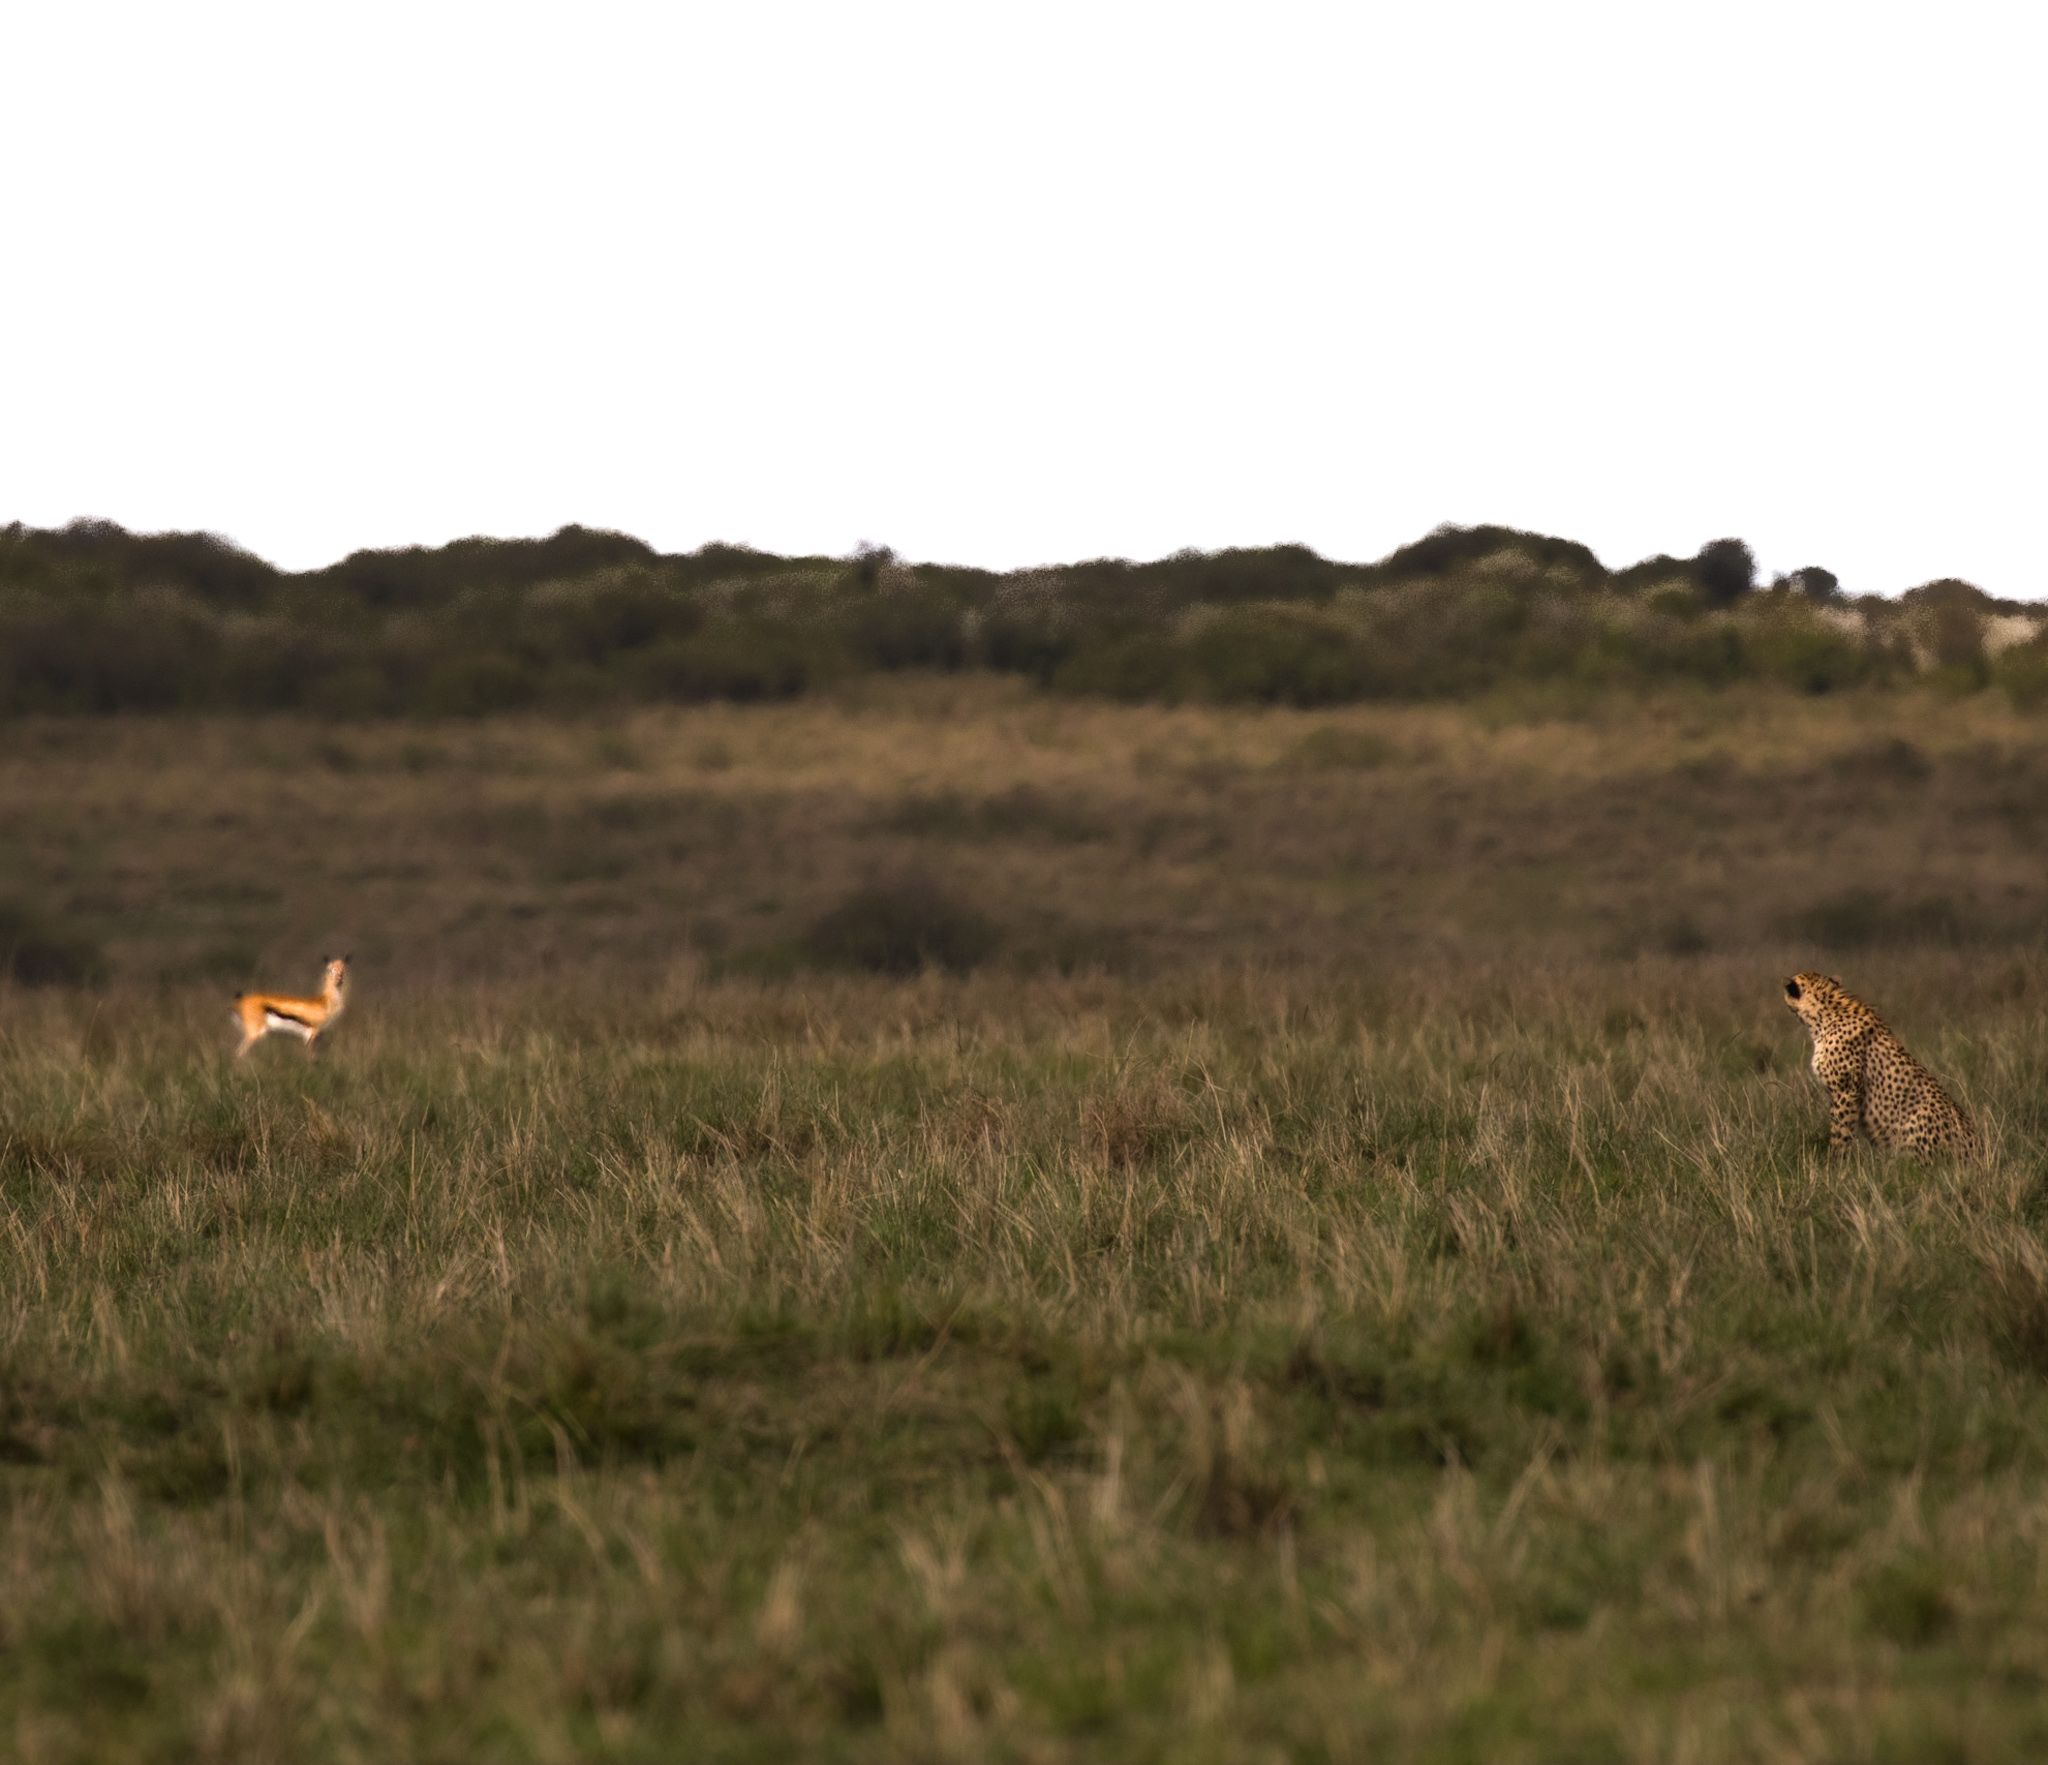 The Cheetah is staring at impala